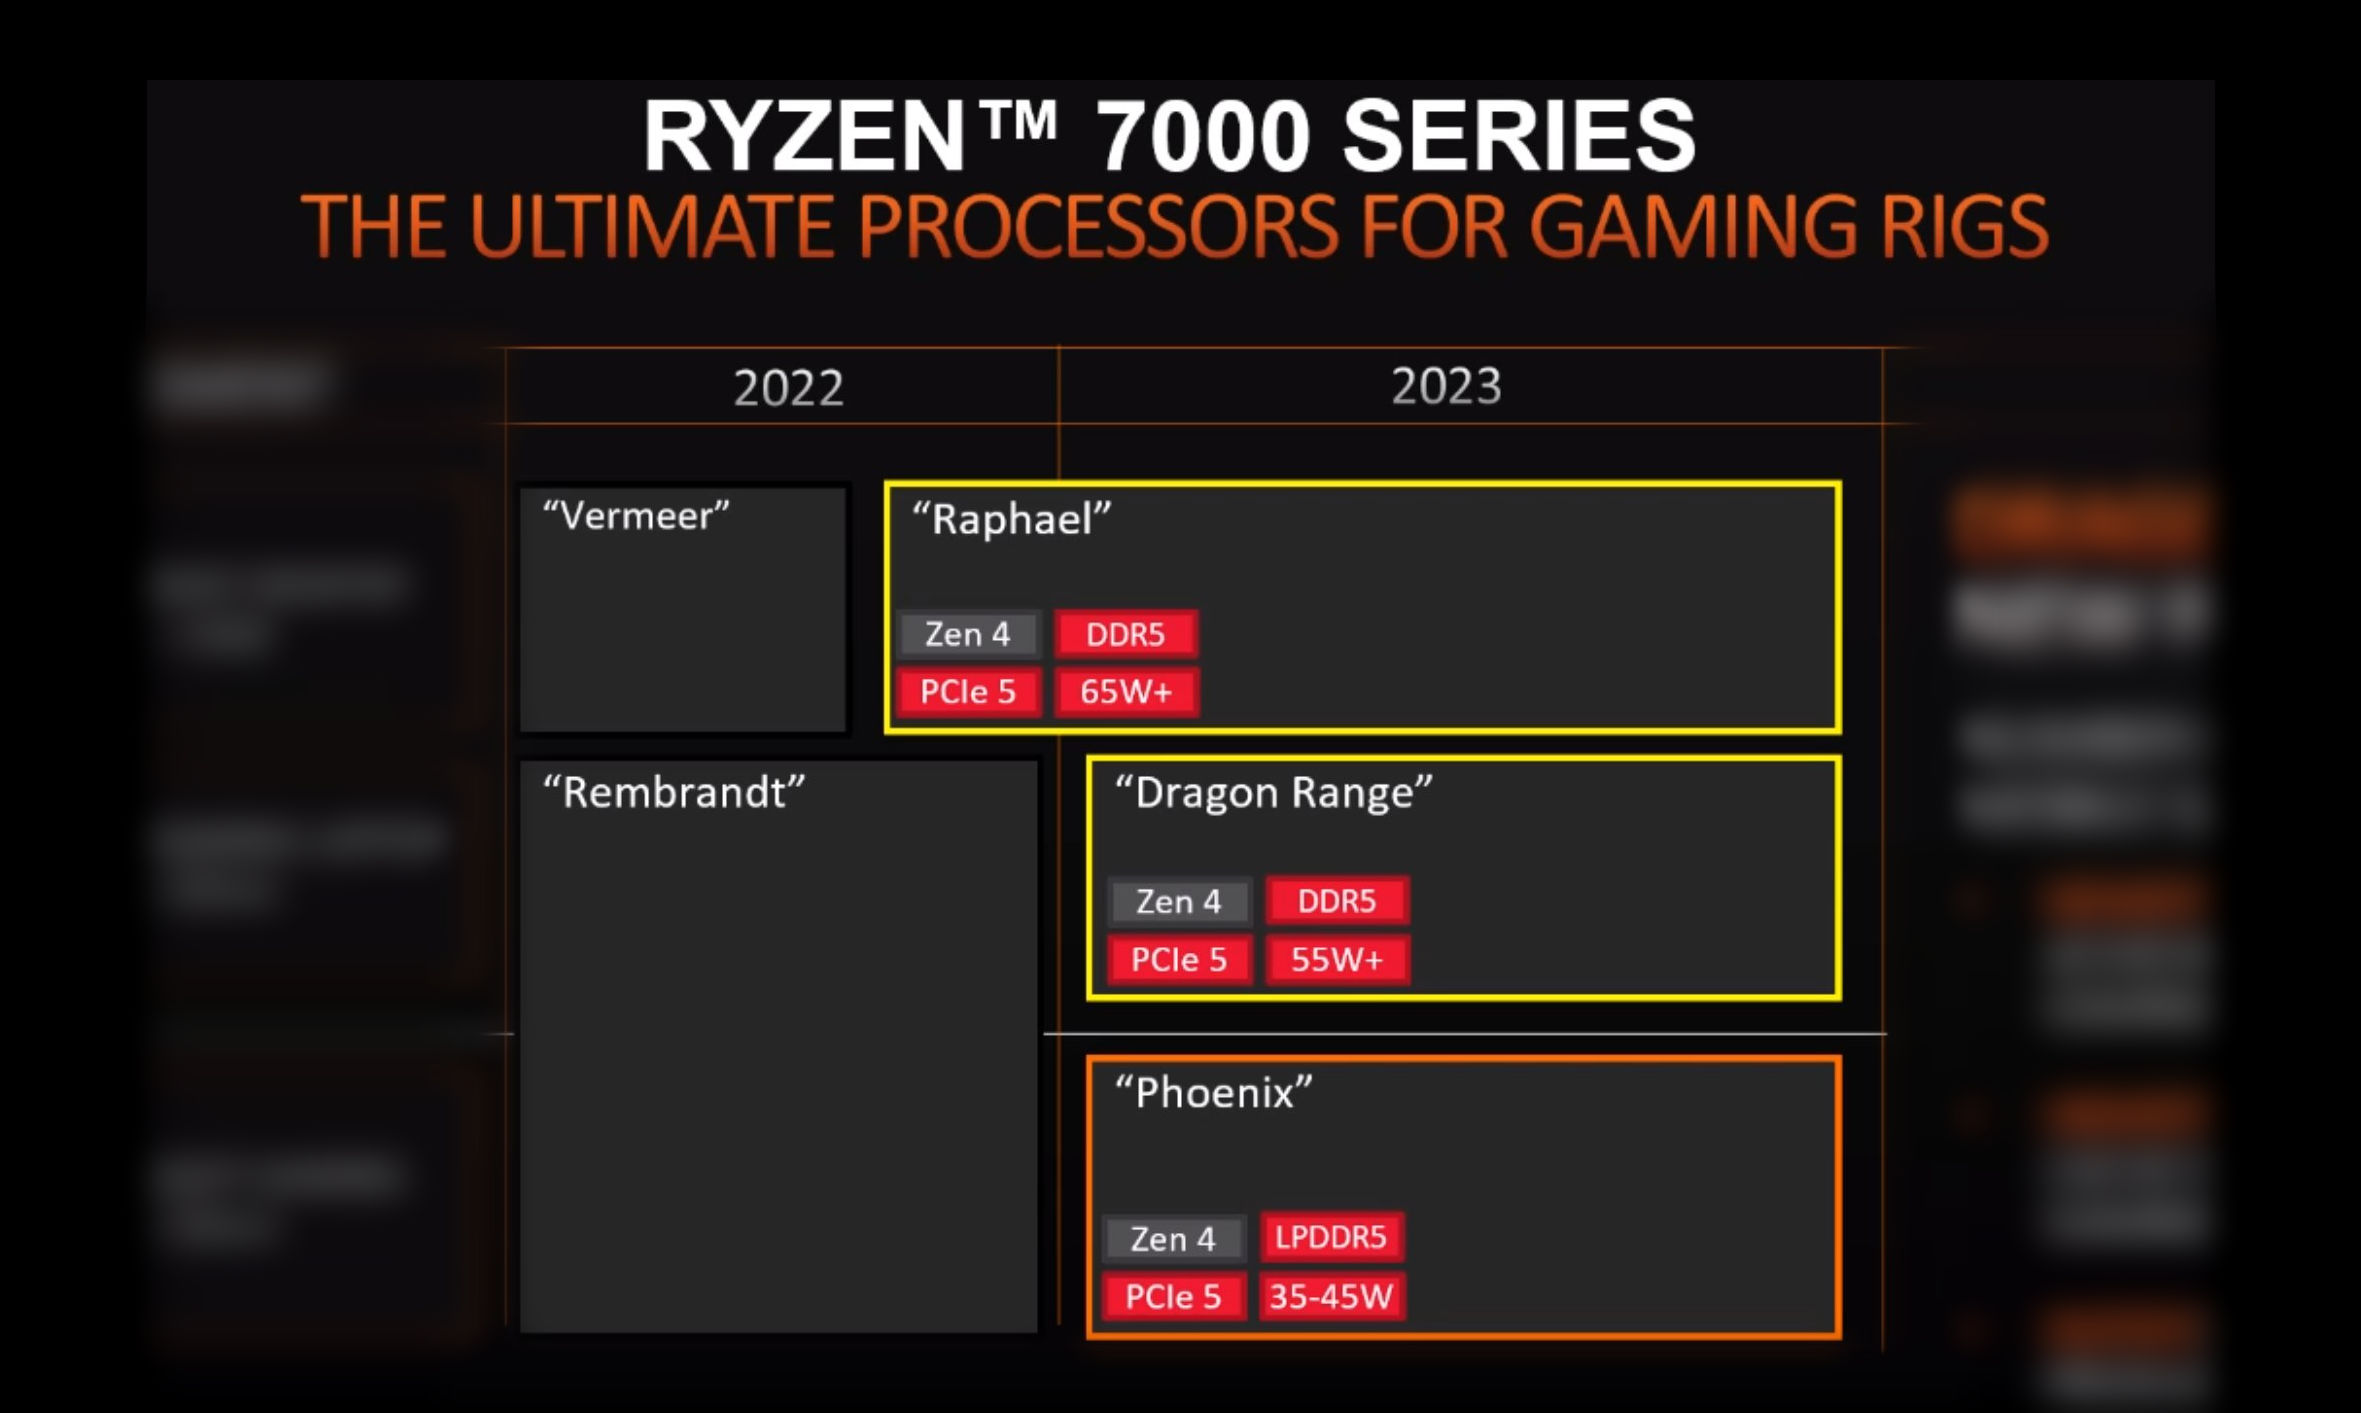 وافقت AMD على Zen4 و Ryzen 7000 Series: Rafael في عام 2022 ، و Dragon Range و Phoenix في عام 2023